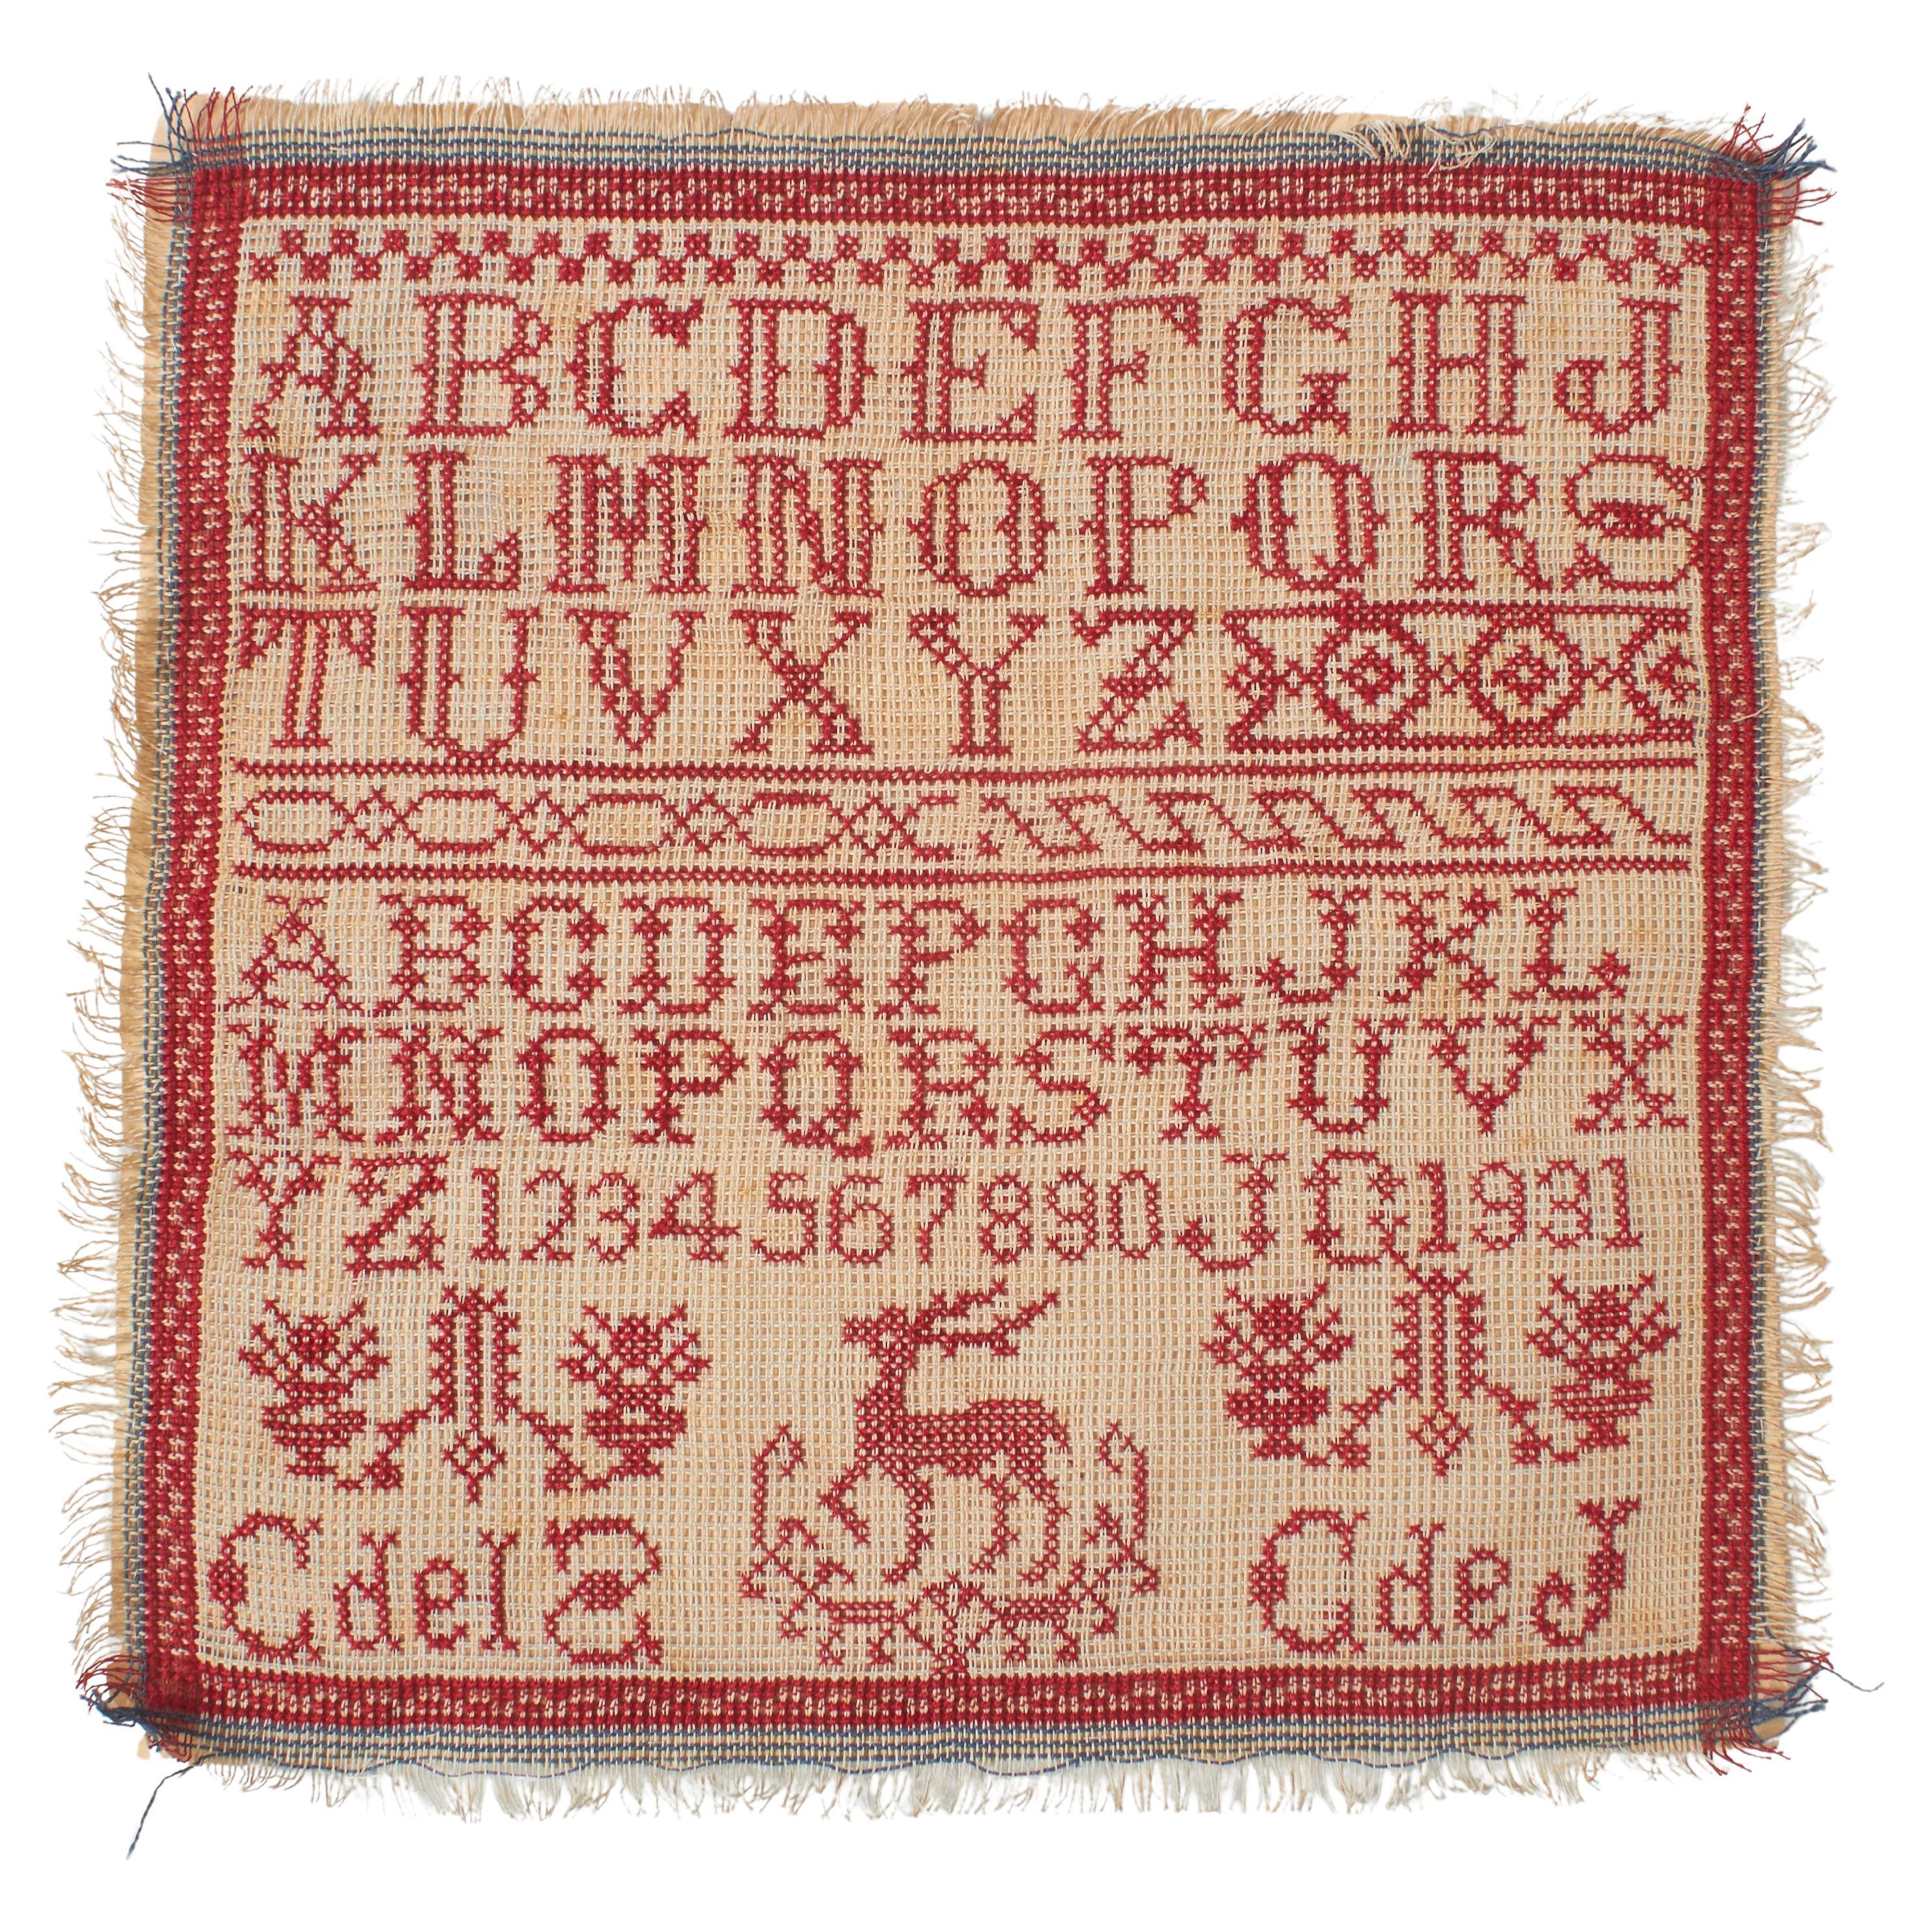 Rotes und weißes Kreuzstich-Sammlerstück des 20. Jahrhunderts mit Alphabet und Zahlen